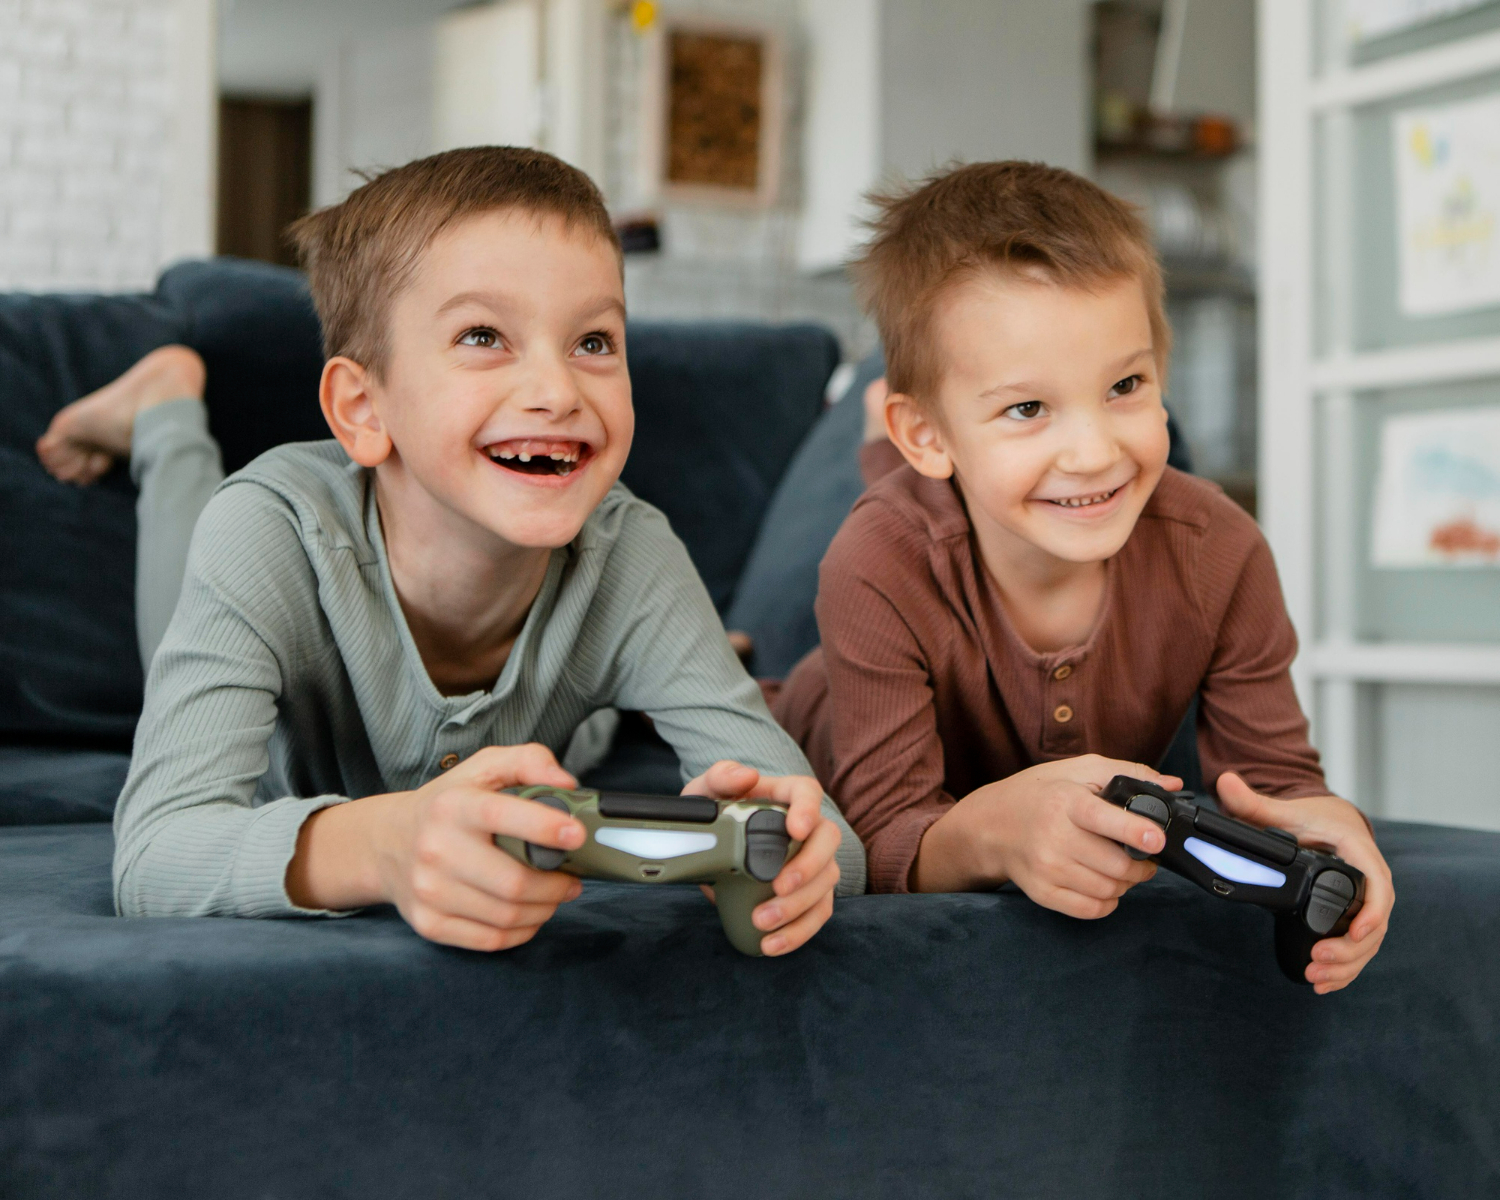 videogame podem afetar positivamente a saúde mental e o bem-estar dos mais jovens